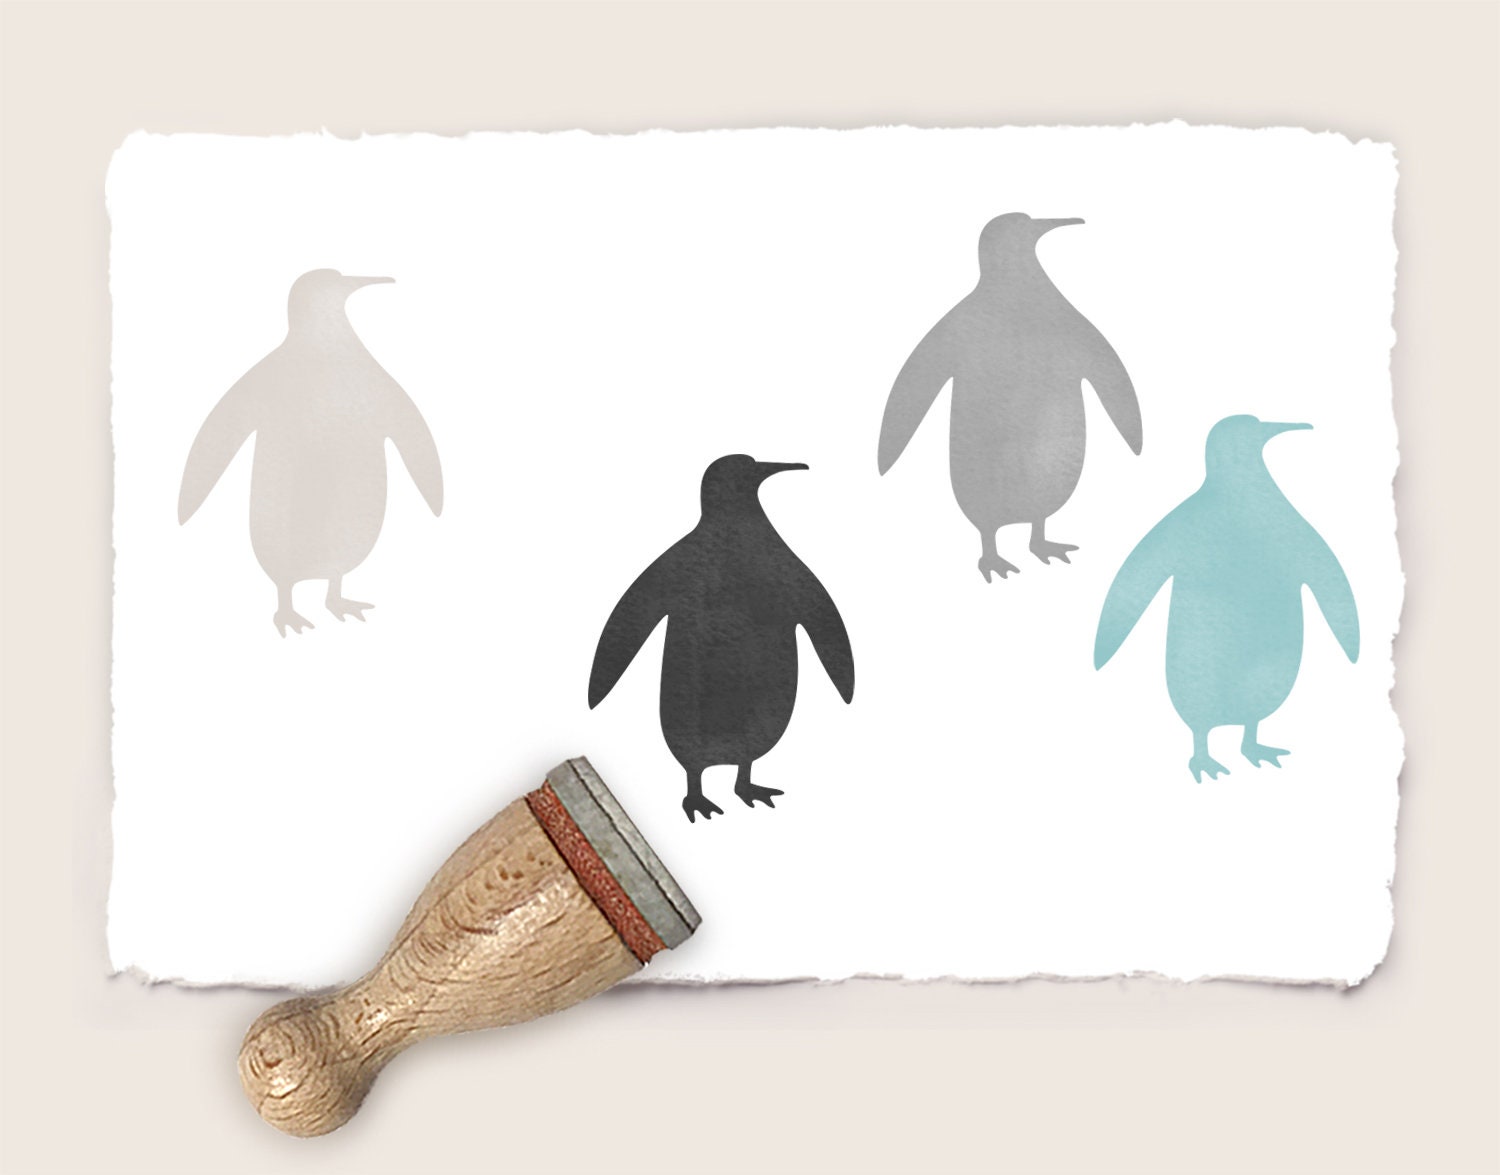 Pinguin: Darum ist der Vogel so besonders